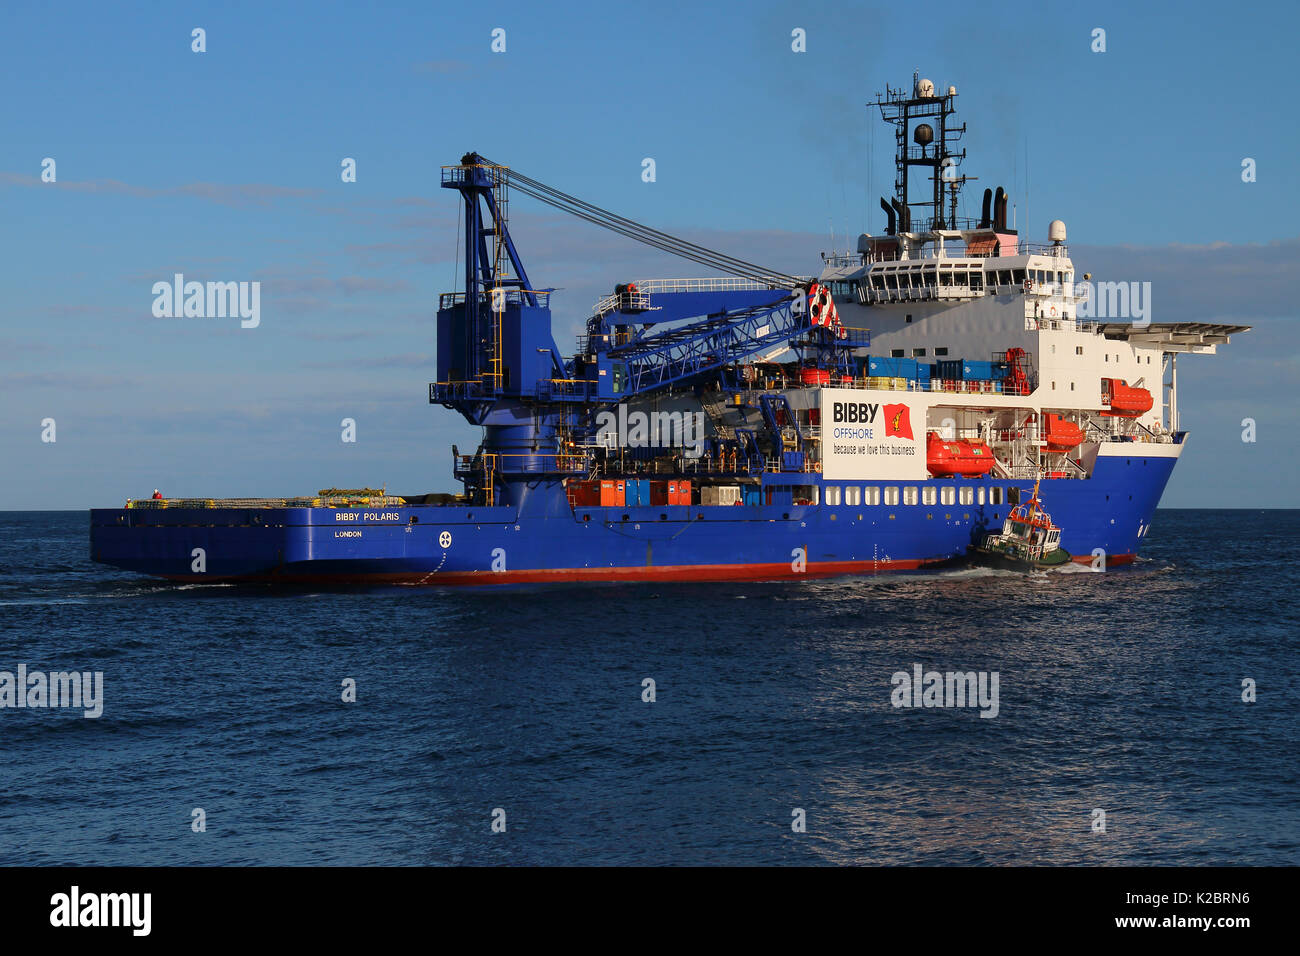 Pilotprojekt in Anwesenheit mit Dive Unterstützung Schiff "bibby Polaris' am Hafen Peterhead, Oktober 2014. Alle nicht-redaktionelle Verwendungen muß einzeln beendet werden. Stockfoto